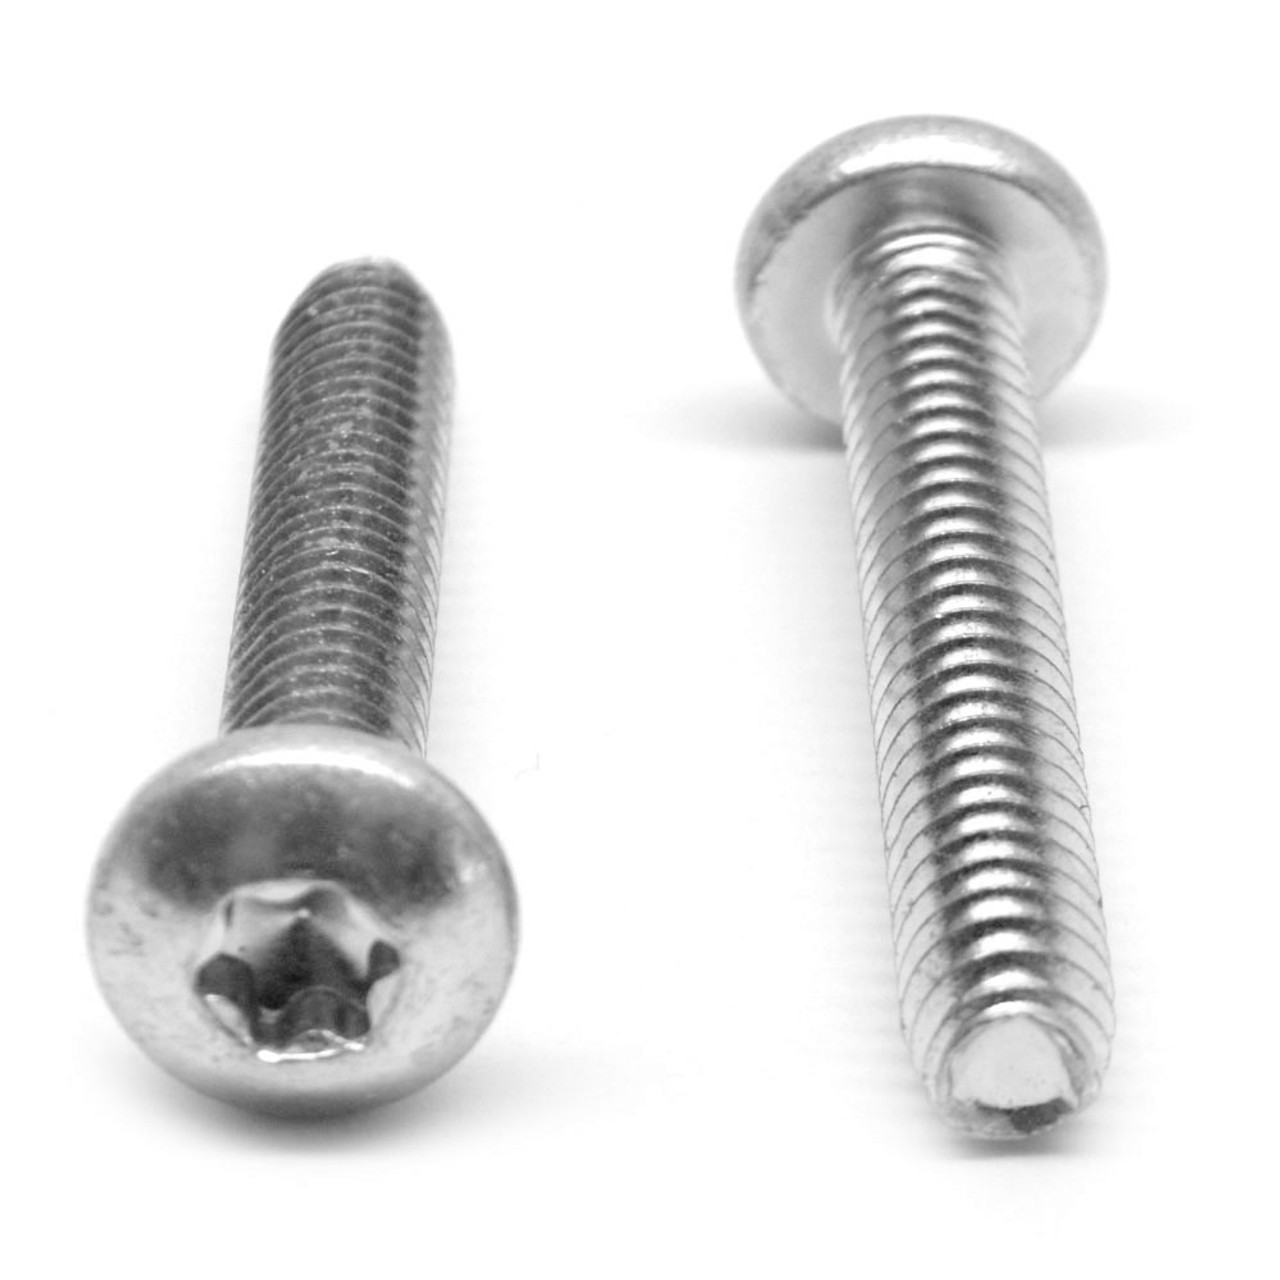 #8-32 x 3/4" (FT) Coarse Thread Taptite?-Alternative Thread Rolling Screw 6 Lobe Pan Head Low Carbon Steel Zinc Plated / Wax